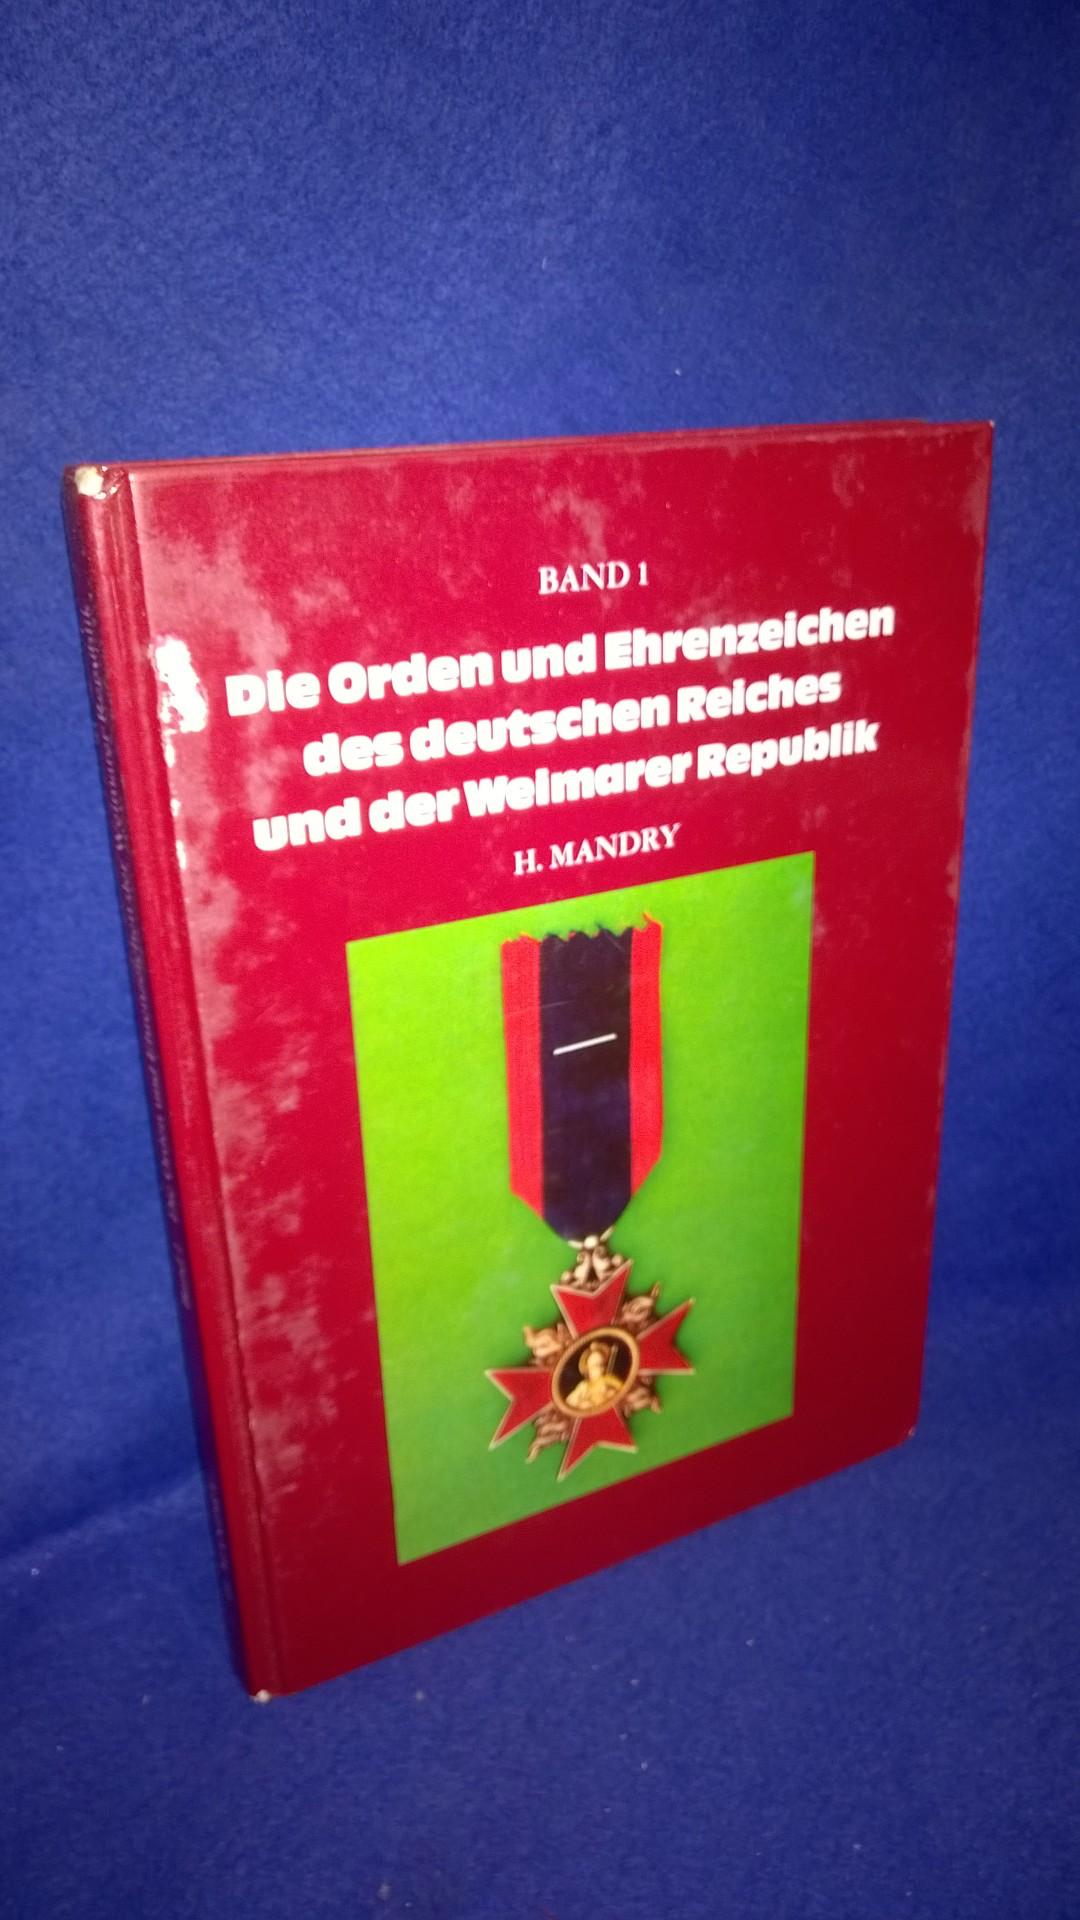 Die Orden und Ehrenzeichen des deutschen Reiches und der Weimarer Republik - Band 1. Deutschland-Katalog - Deutsches Reich - Orden und Ehrenzeichen ab 1871.